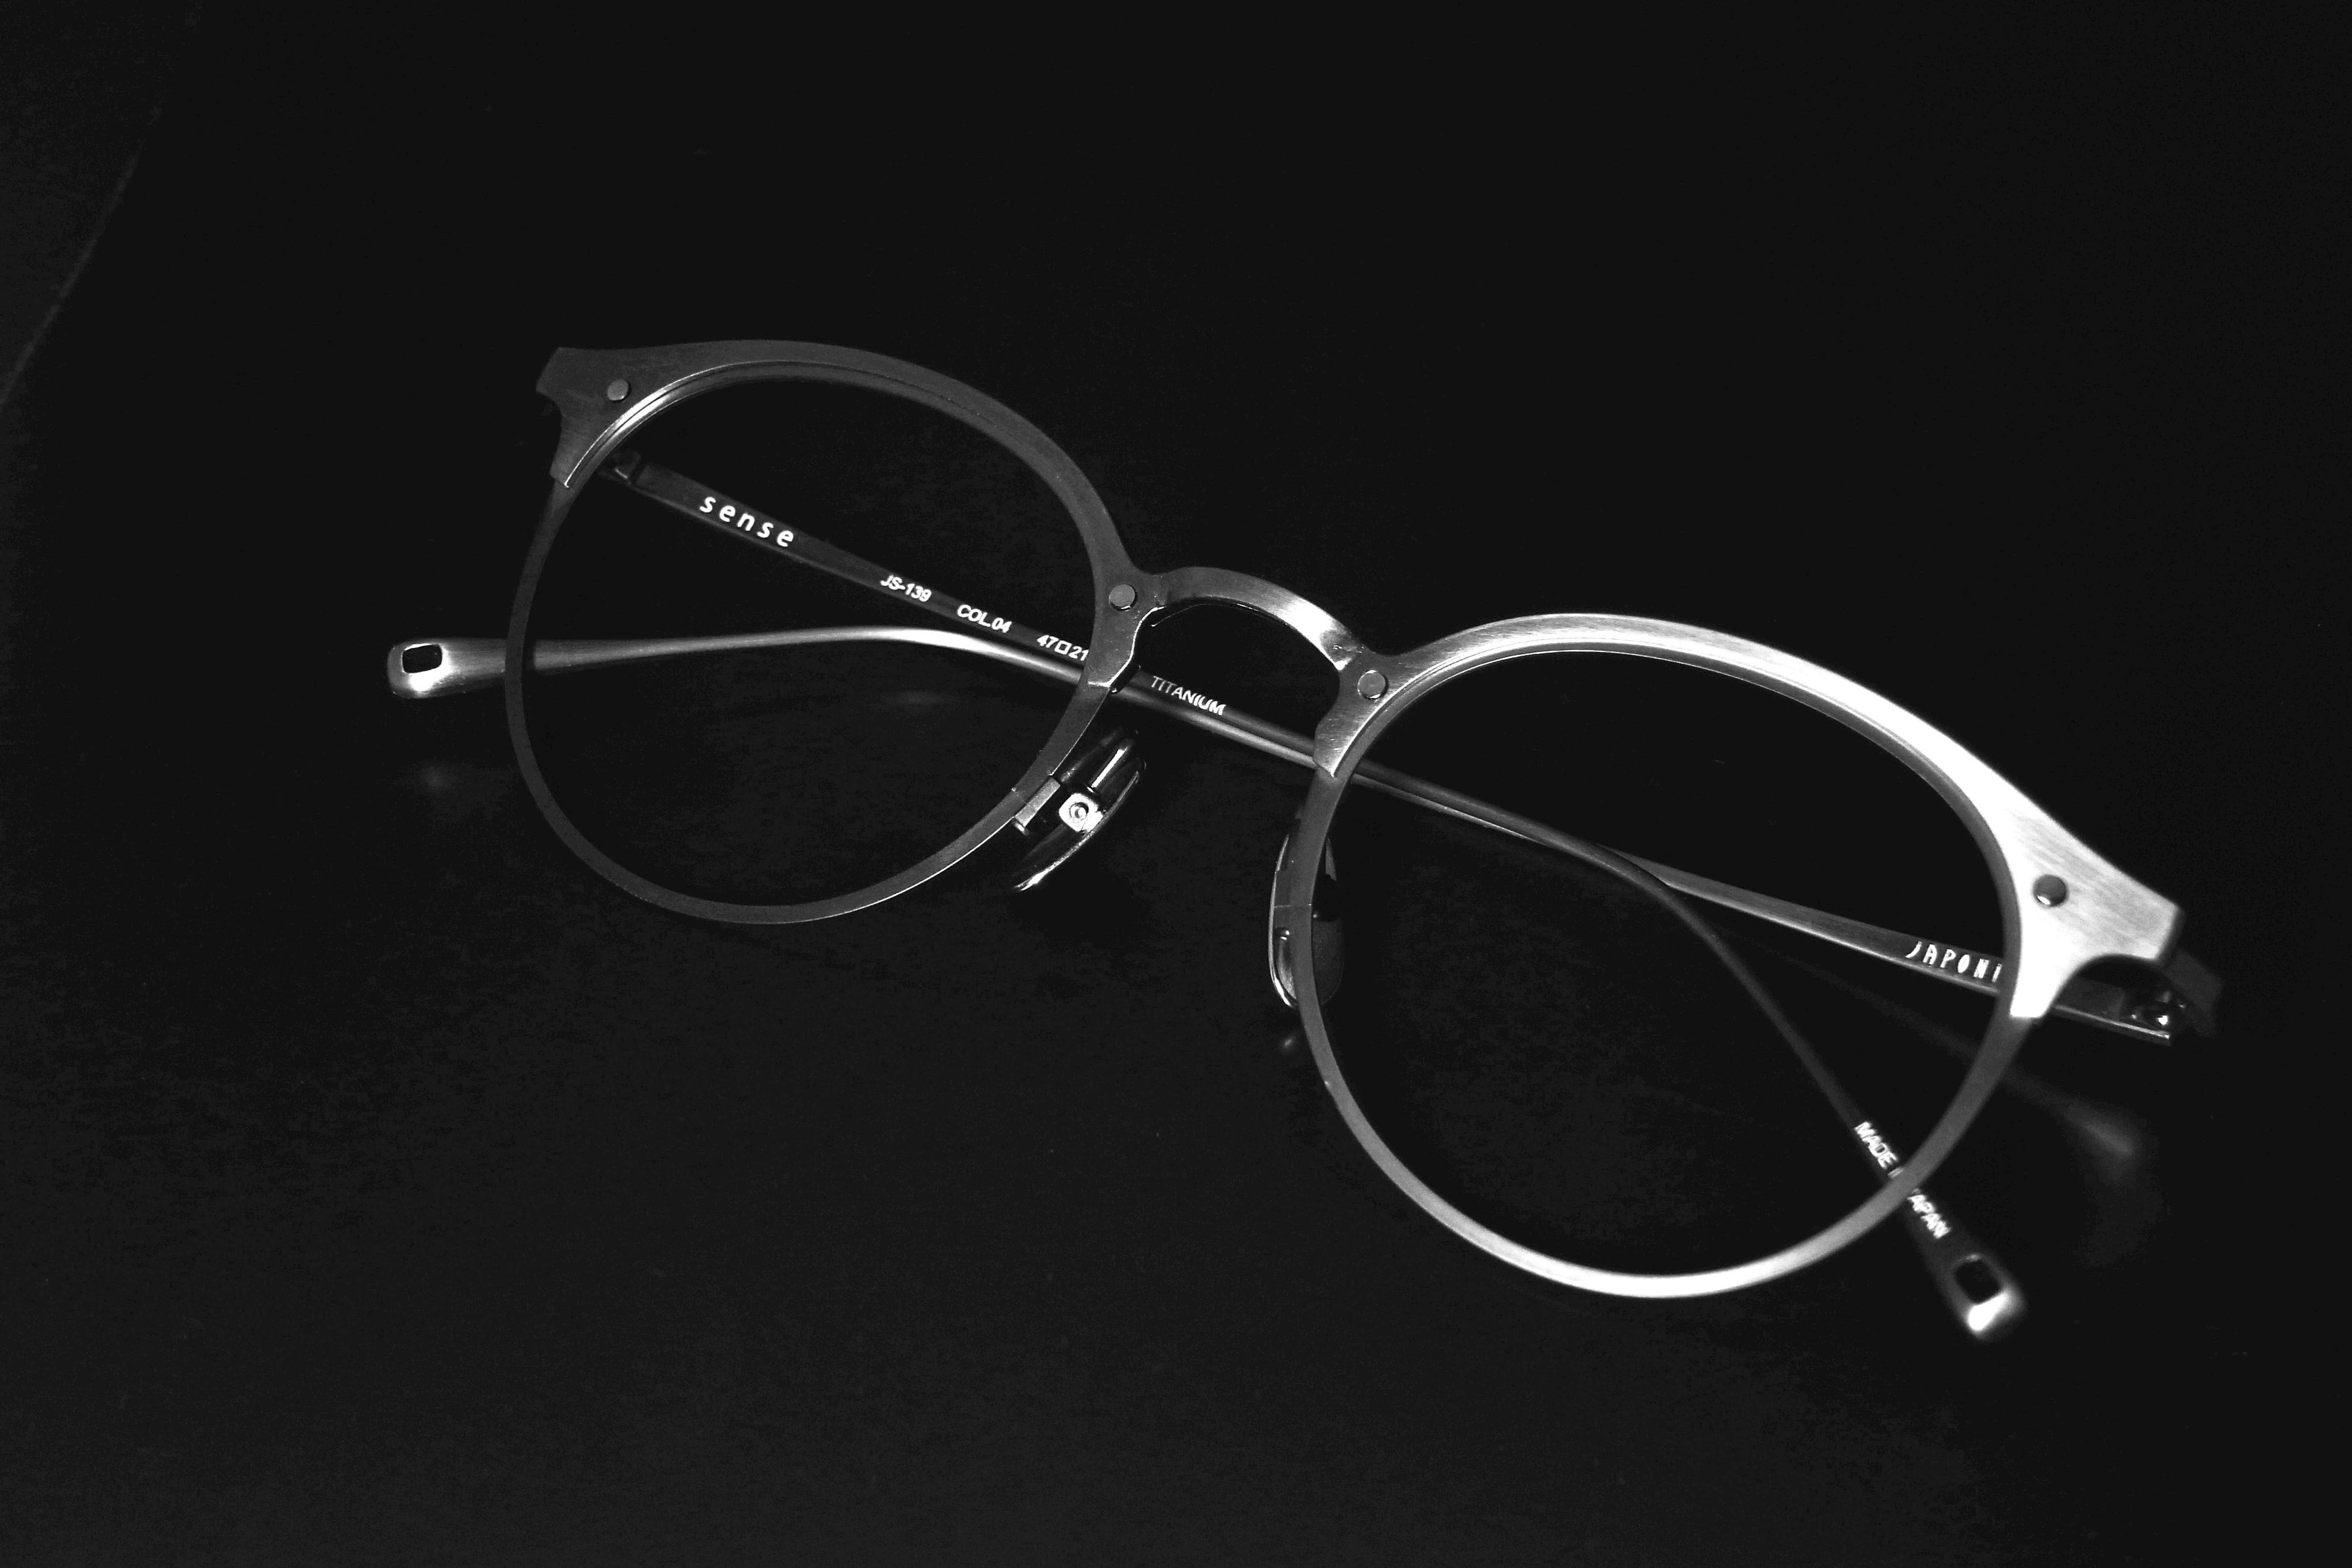 日本神級品牌 JAPONISM「Sense」系列眼鏡新作上架